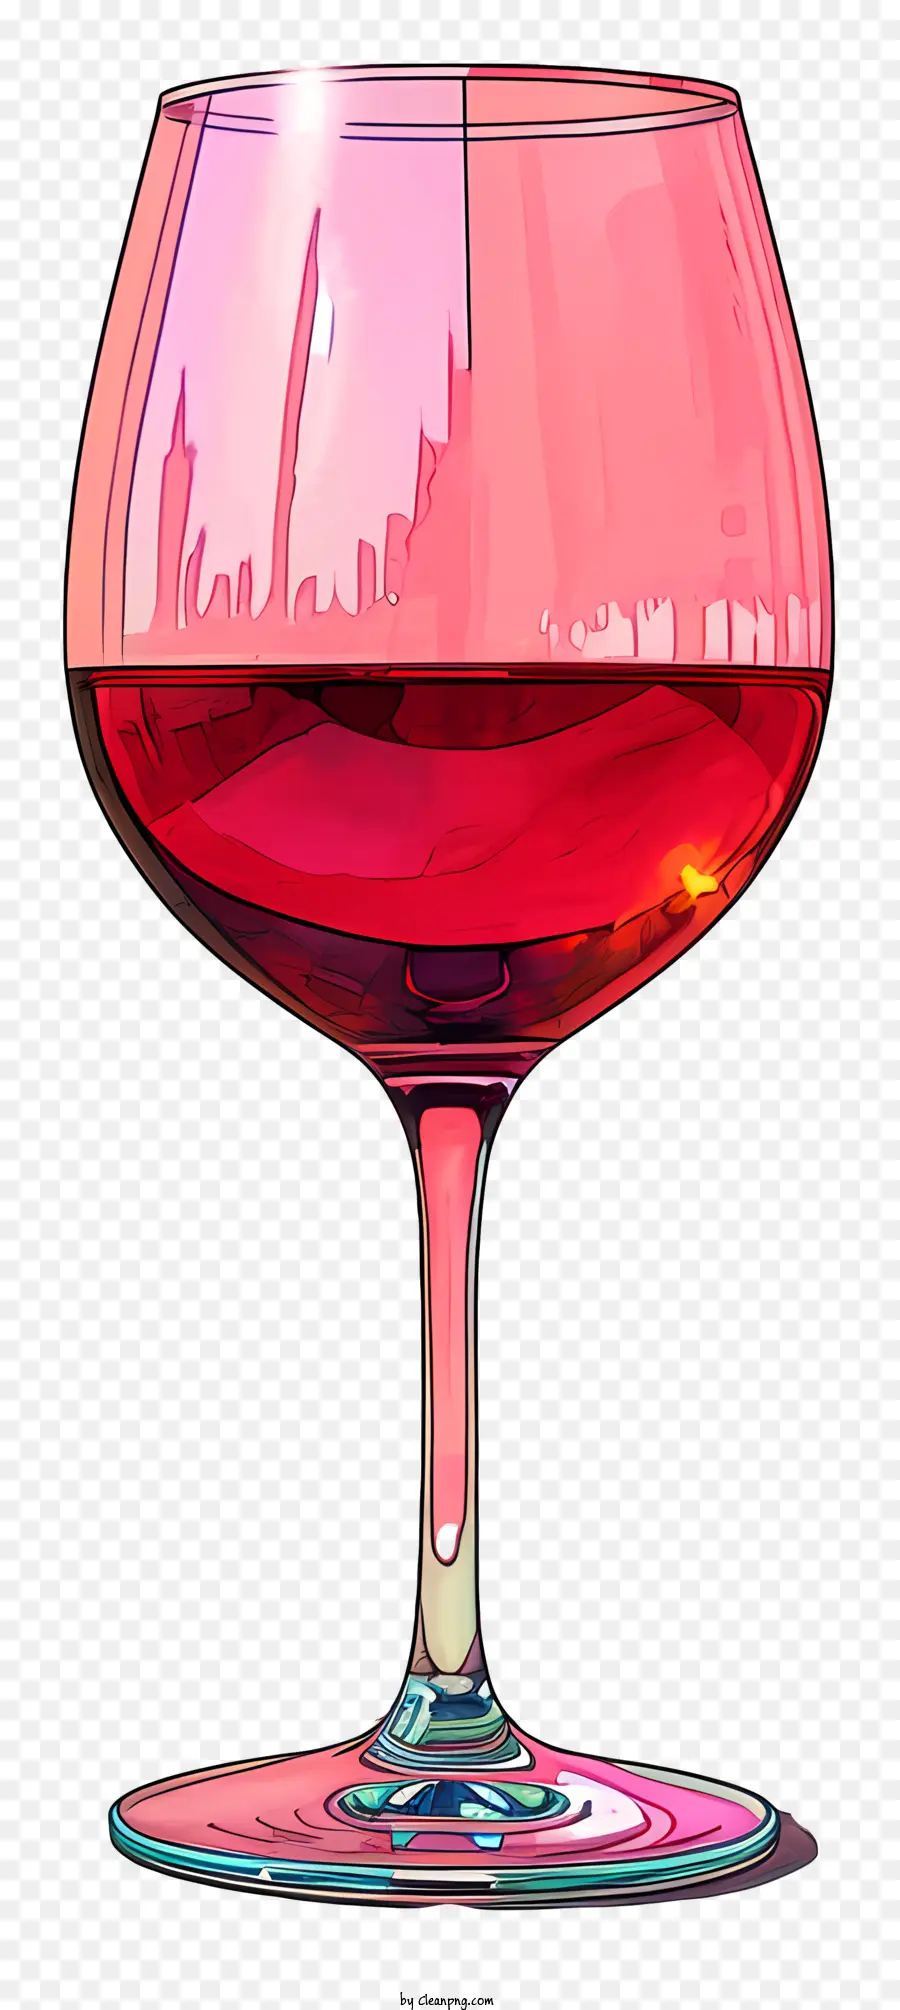 Red Wine Glass Pink Liquid Cloudy Liquid Shimmering Liquid Pink Glass - Chất lỏng màu hồng lấp đầy kính tròn có viền màu hồng